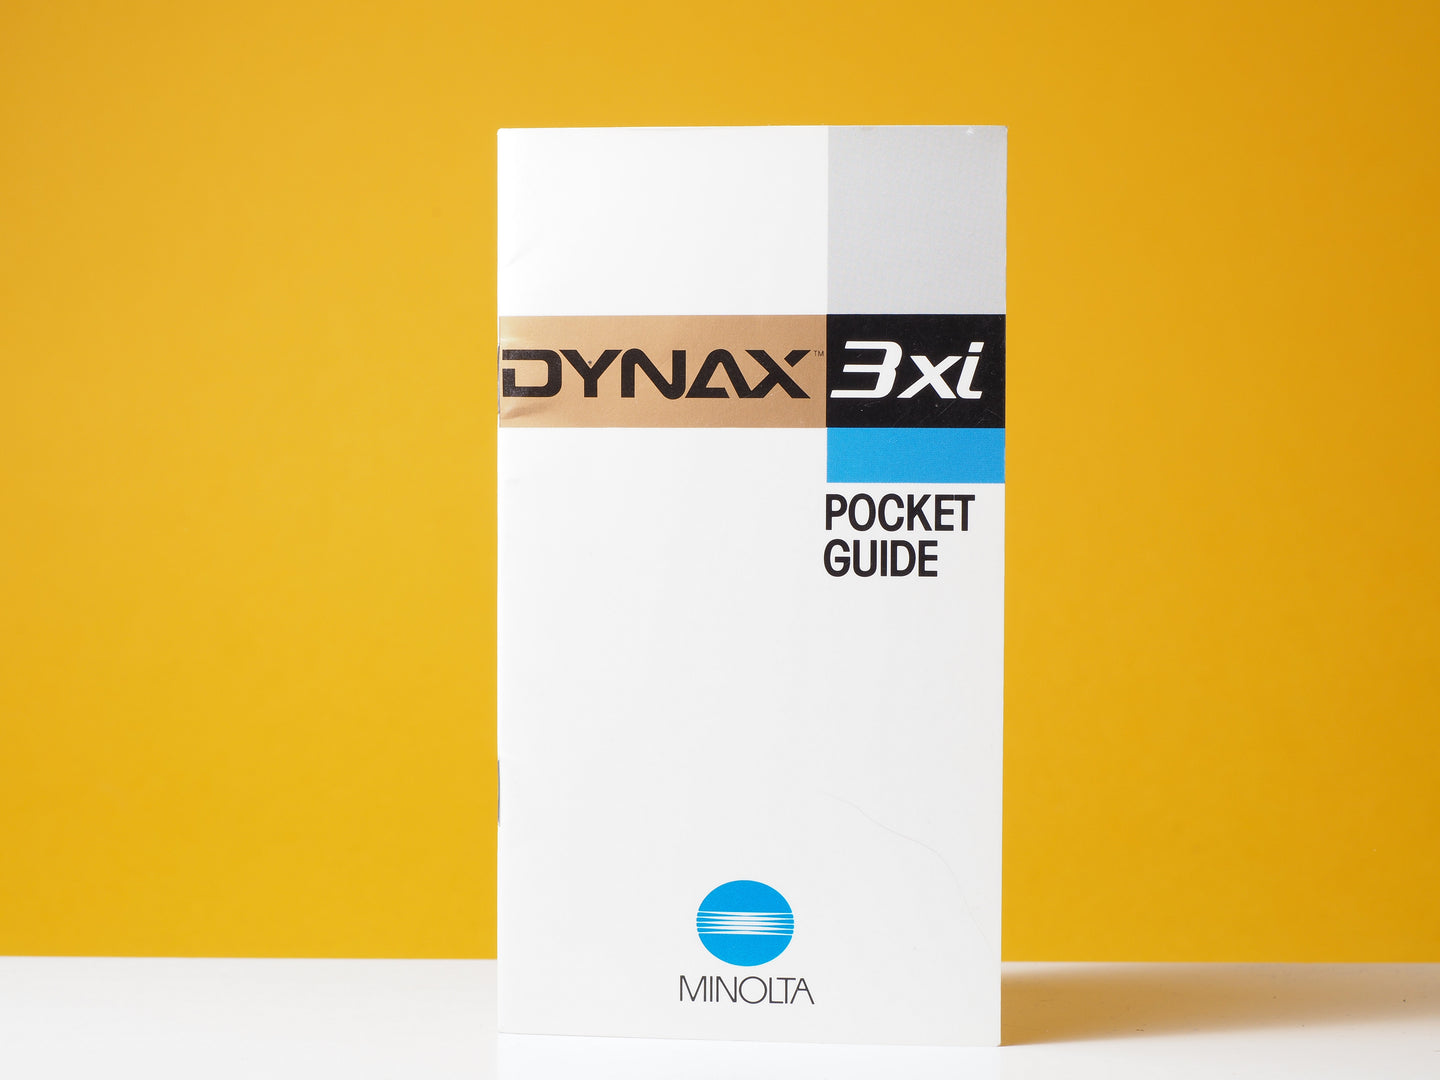 Minolta Dynax 3xi Pocket Guide